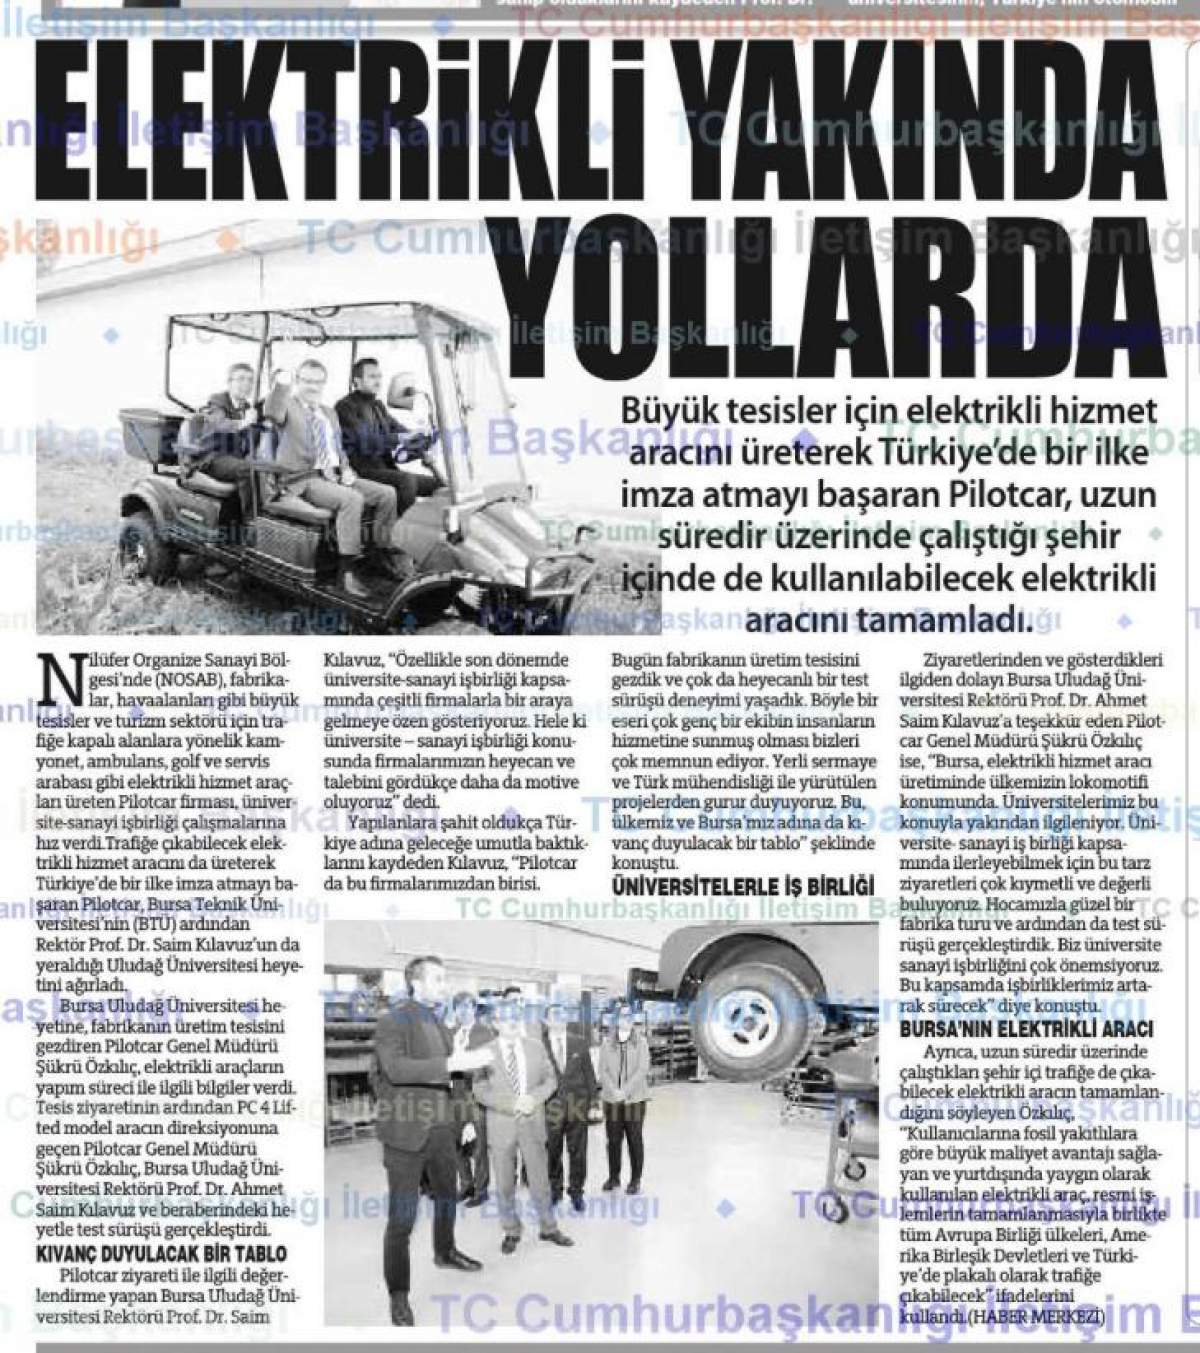 Pilotcar ve Uludağ Üniversitesi